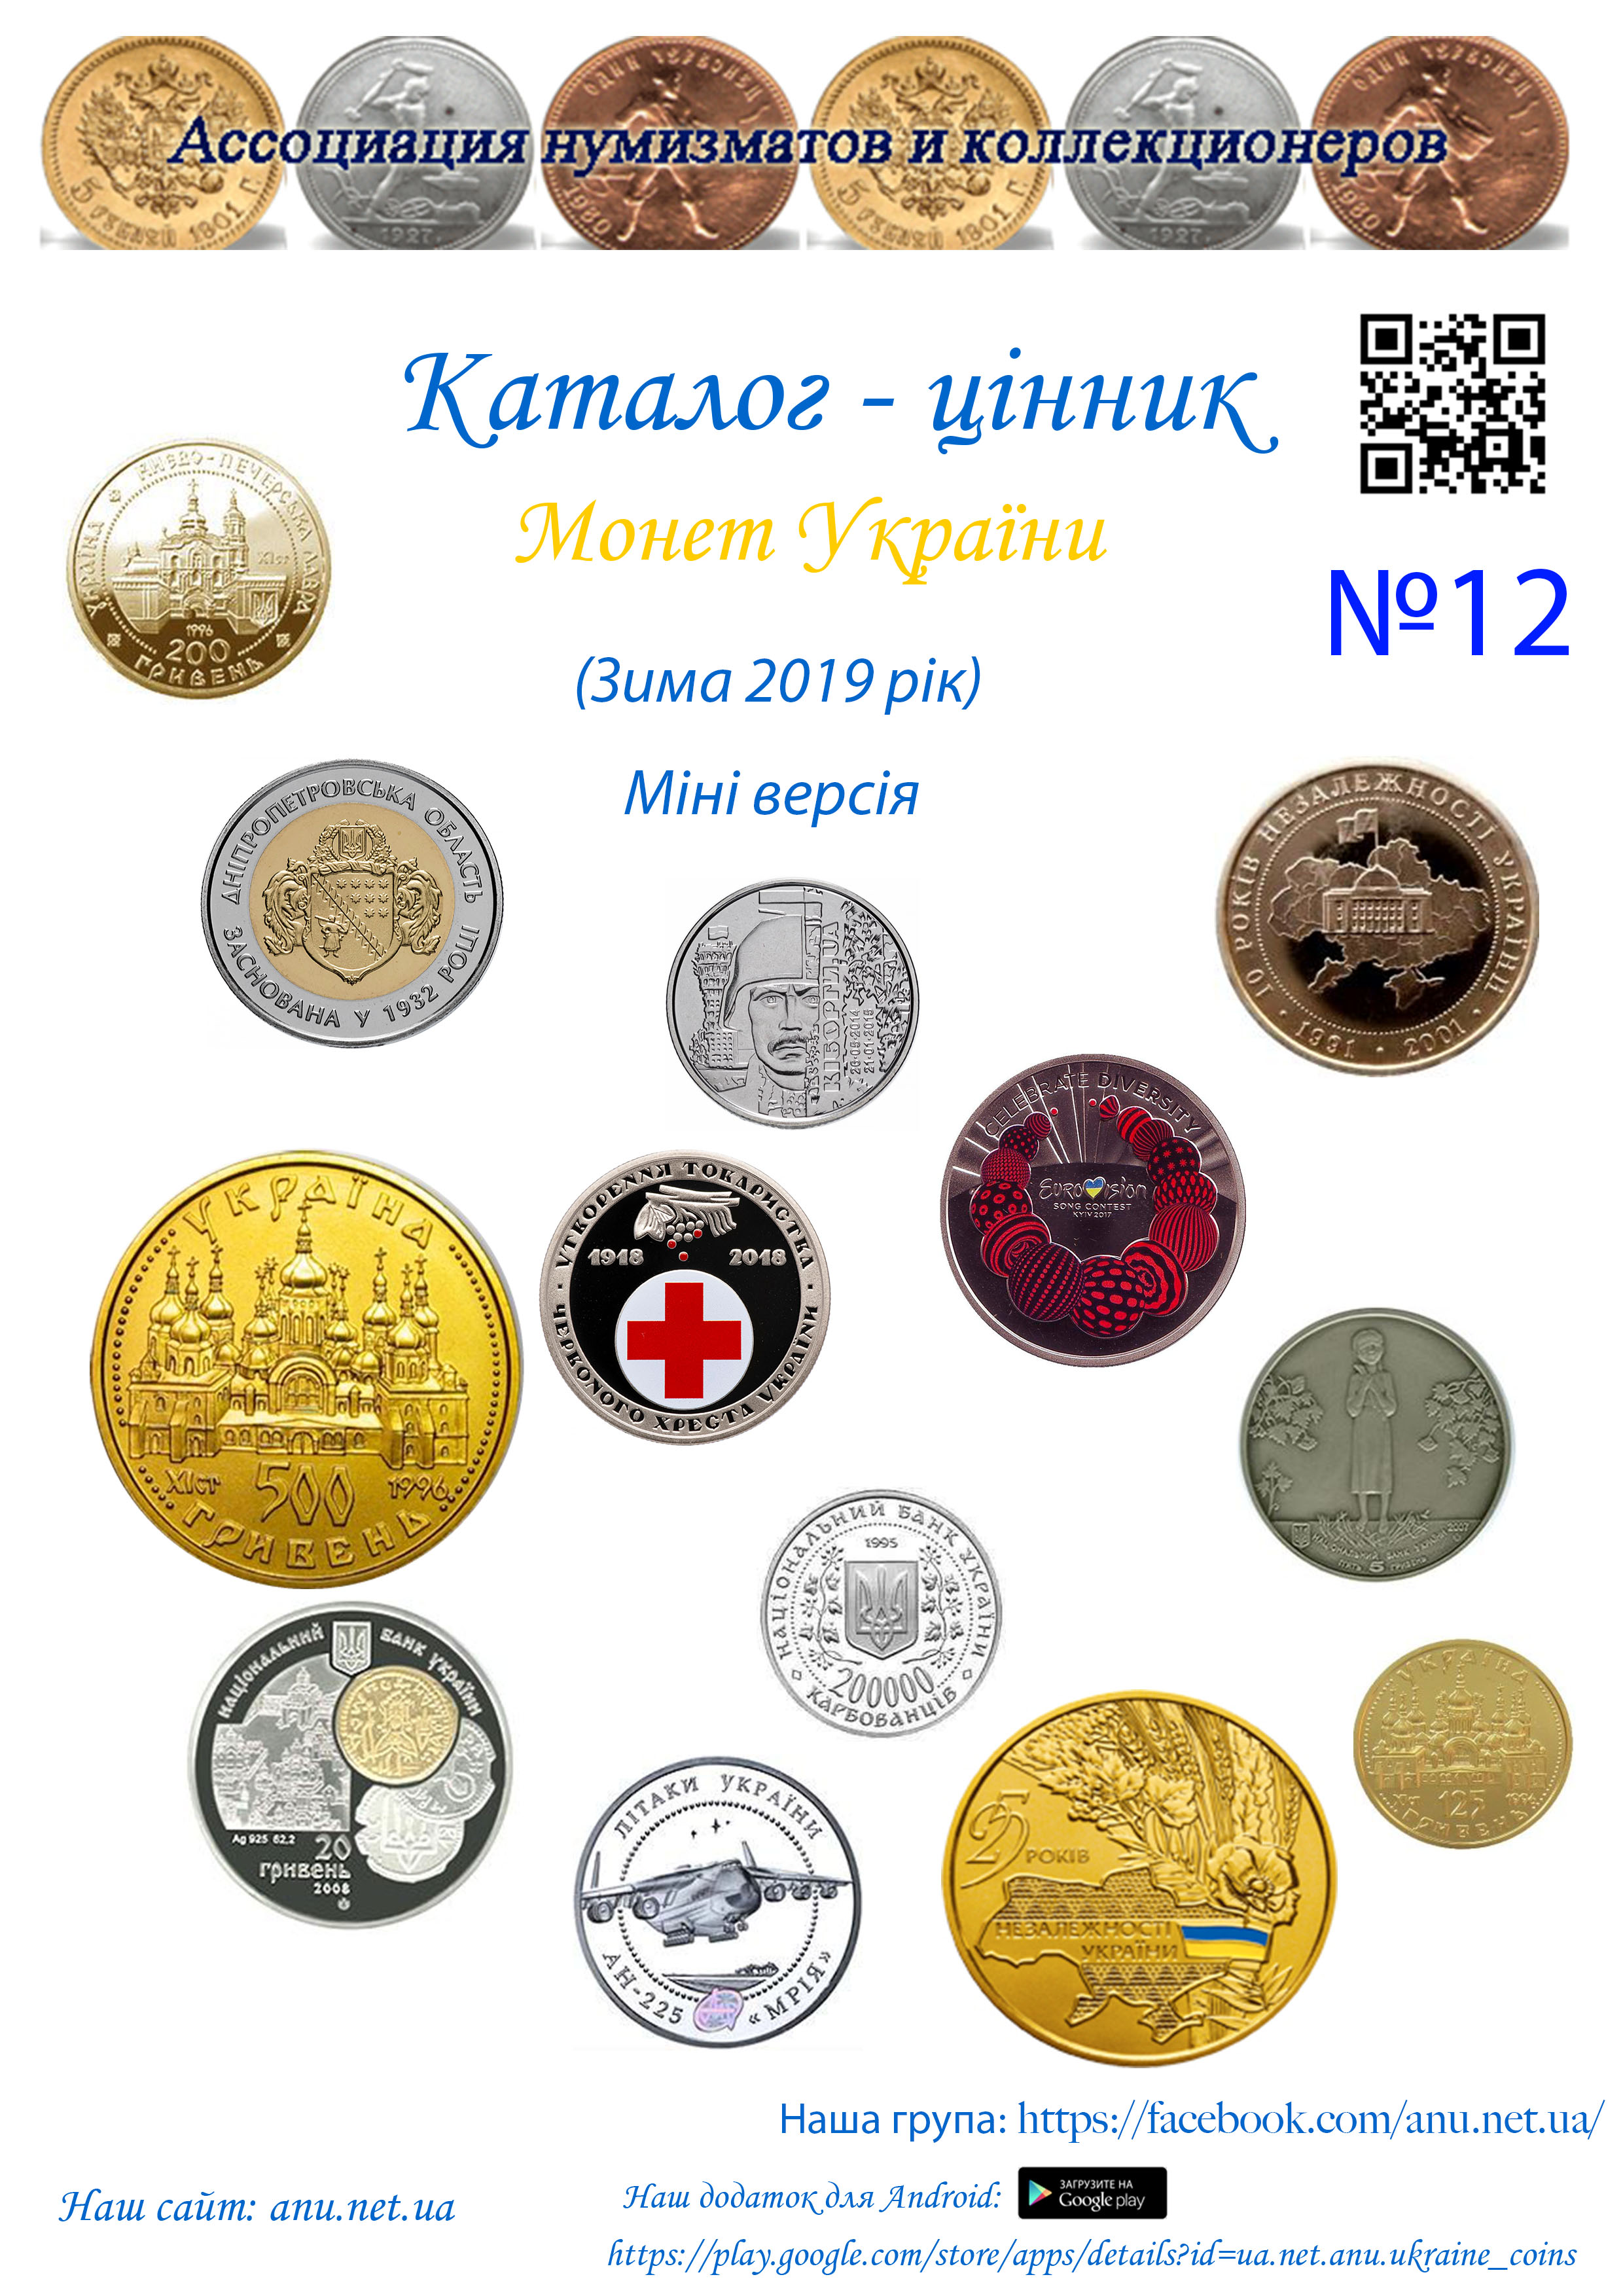 Version_12 Стоимость монет Украины